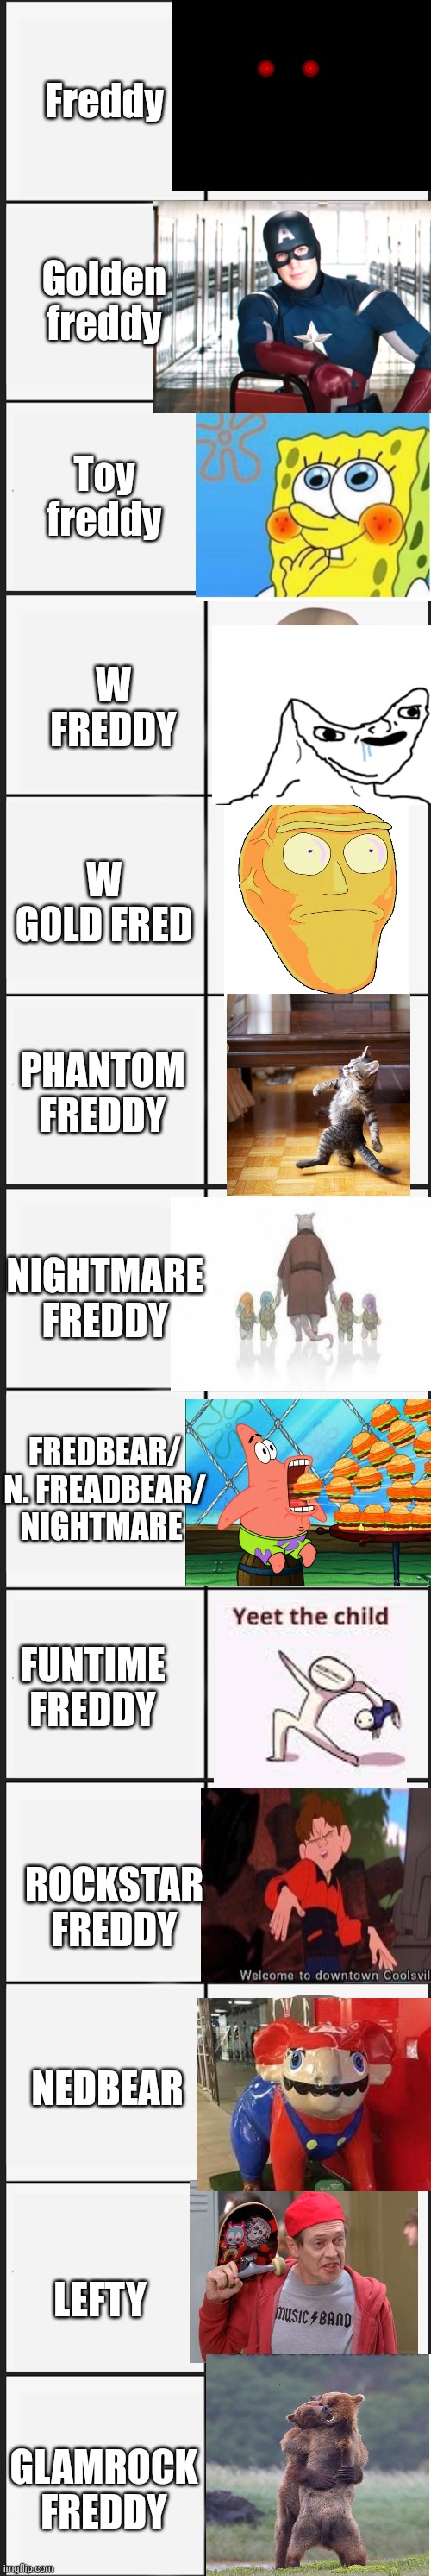 All the fnaf character in nutshell pt 2 | Freddy; Golden freddy; Toy freddy; W FREDDY; W GOLD FRED; PHANTOM FREDDY; NIGHTMARE FREDDY; FREDBEAR/ N. FREADBEAR/ NIGHTMARE; FUNTIME FREDDY; ROCKSTAR FREDDY; NEDBEAR; LEFTY; GLAMROCK FREDDY | made w/ Imgflip meme maker